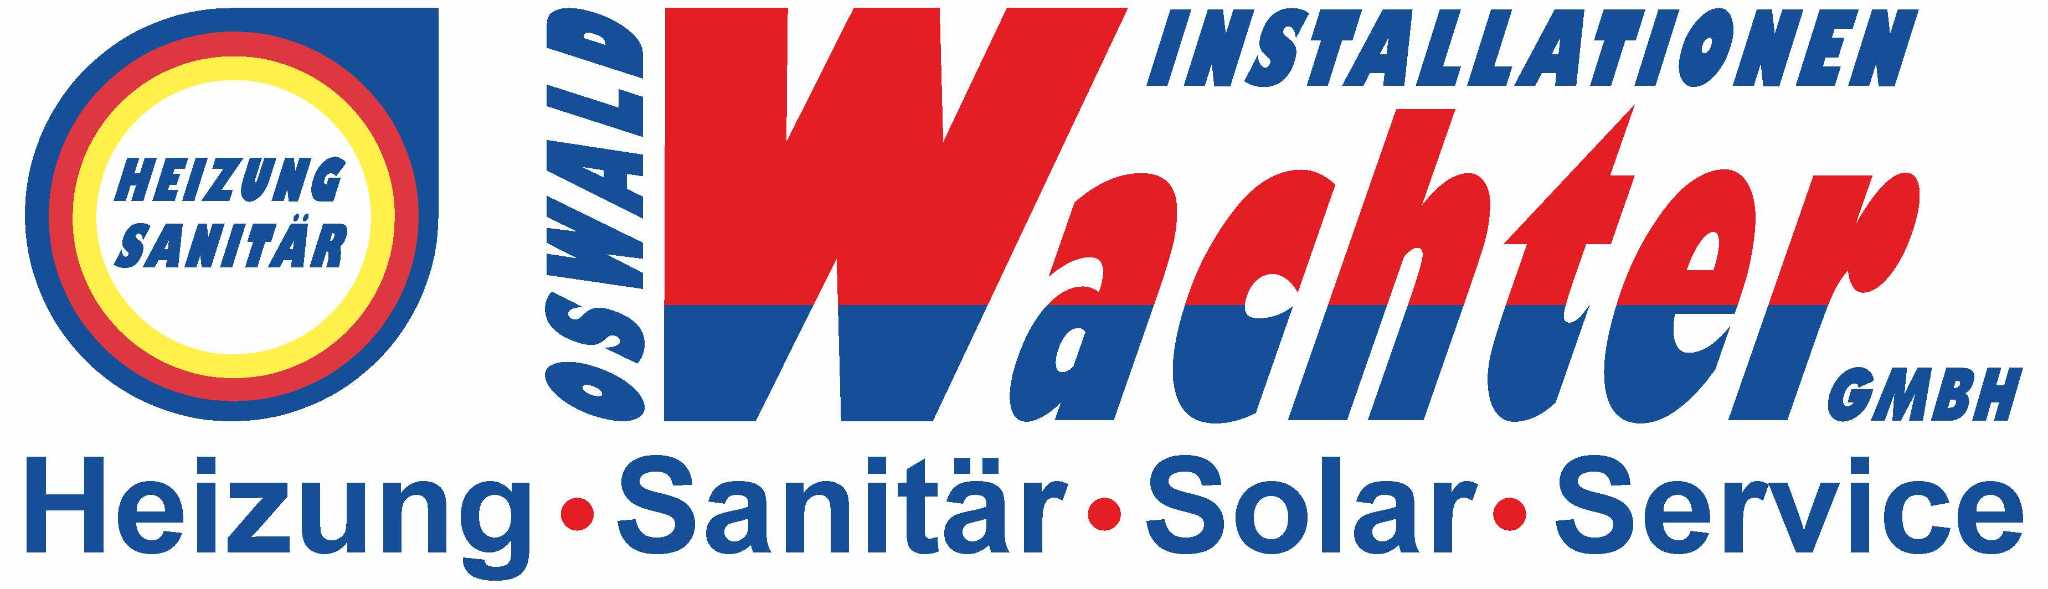 Oswald Wachter Installationen GmbH